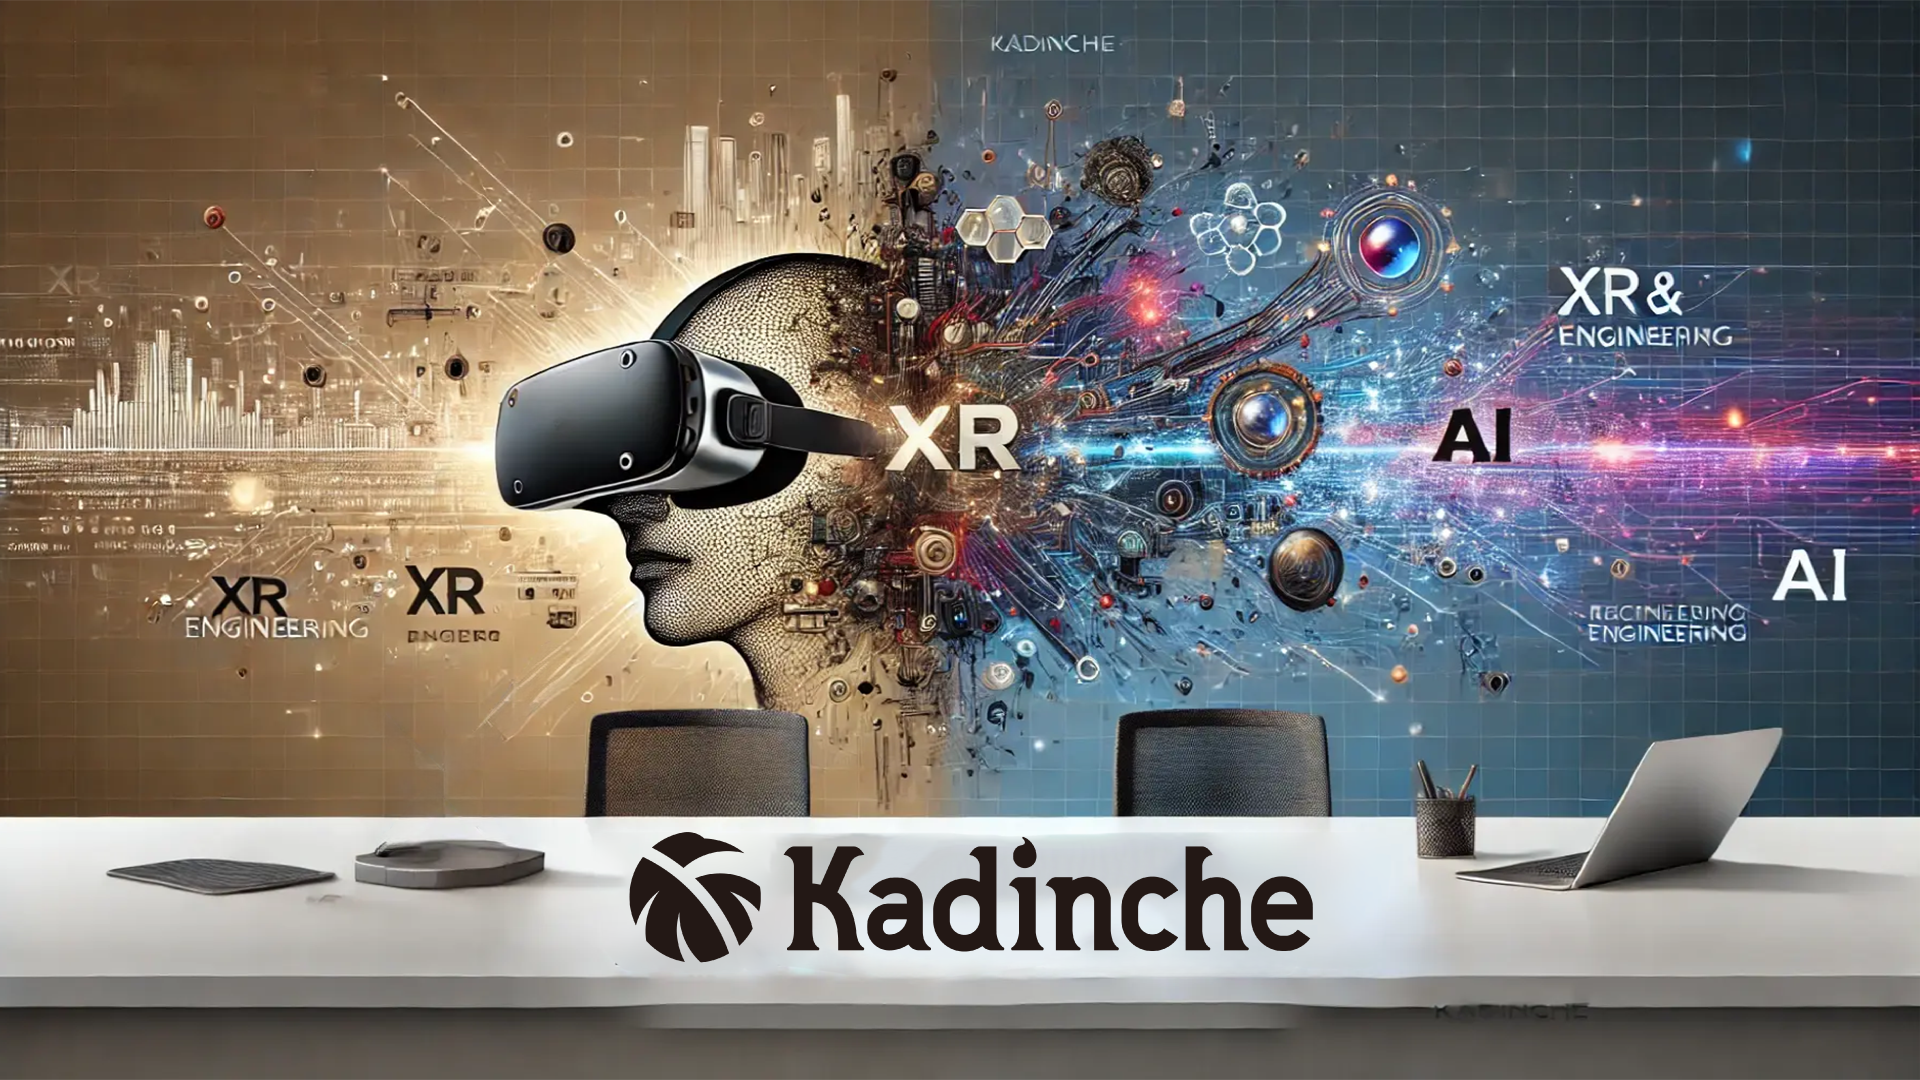 カディンチェ株式会社、「XR & AI Engineering Firm」として新たな飛躍へ